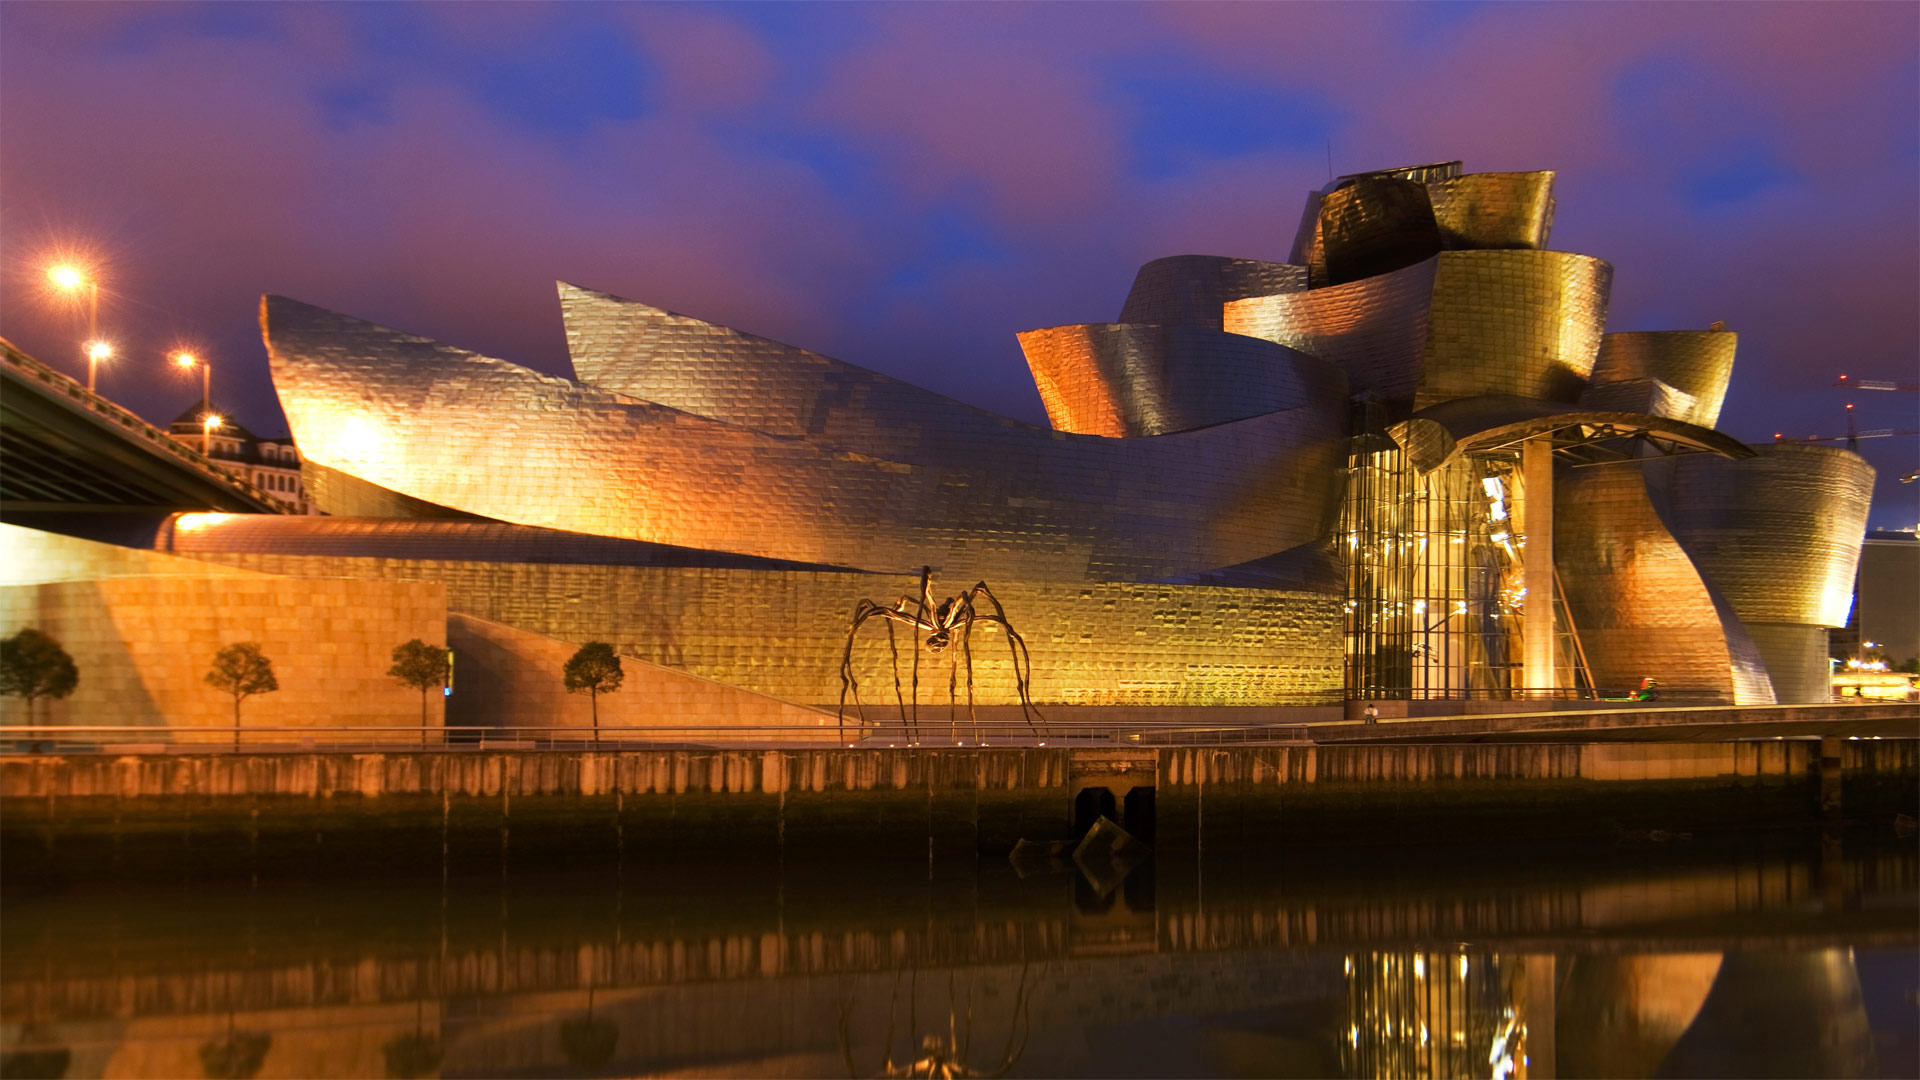 The Guggenheim Bilbao turns 25 wallpaper